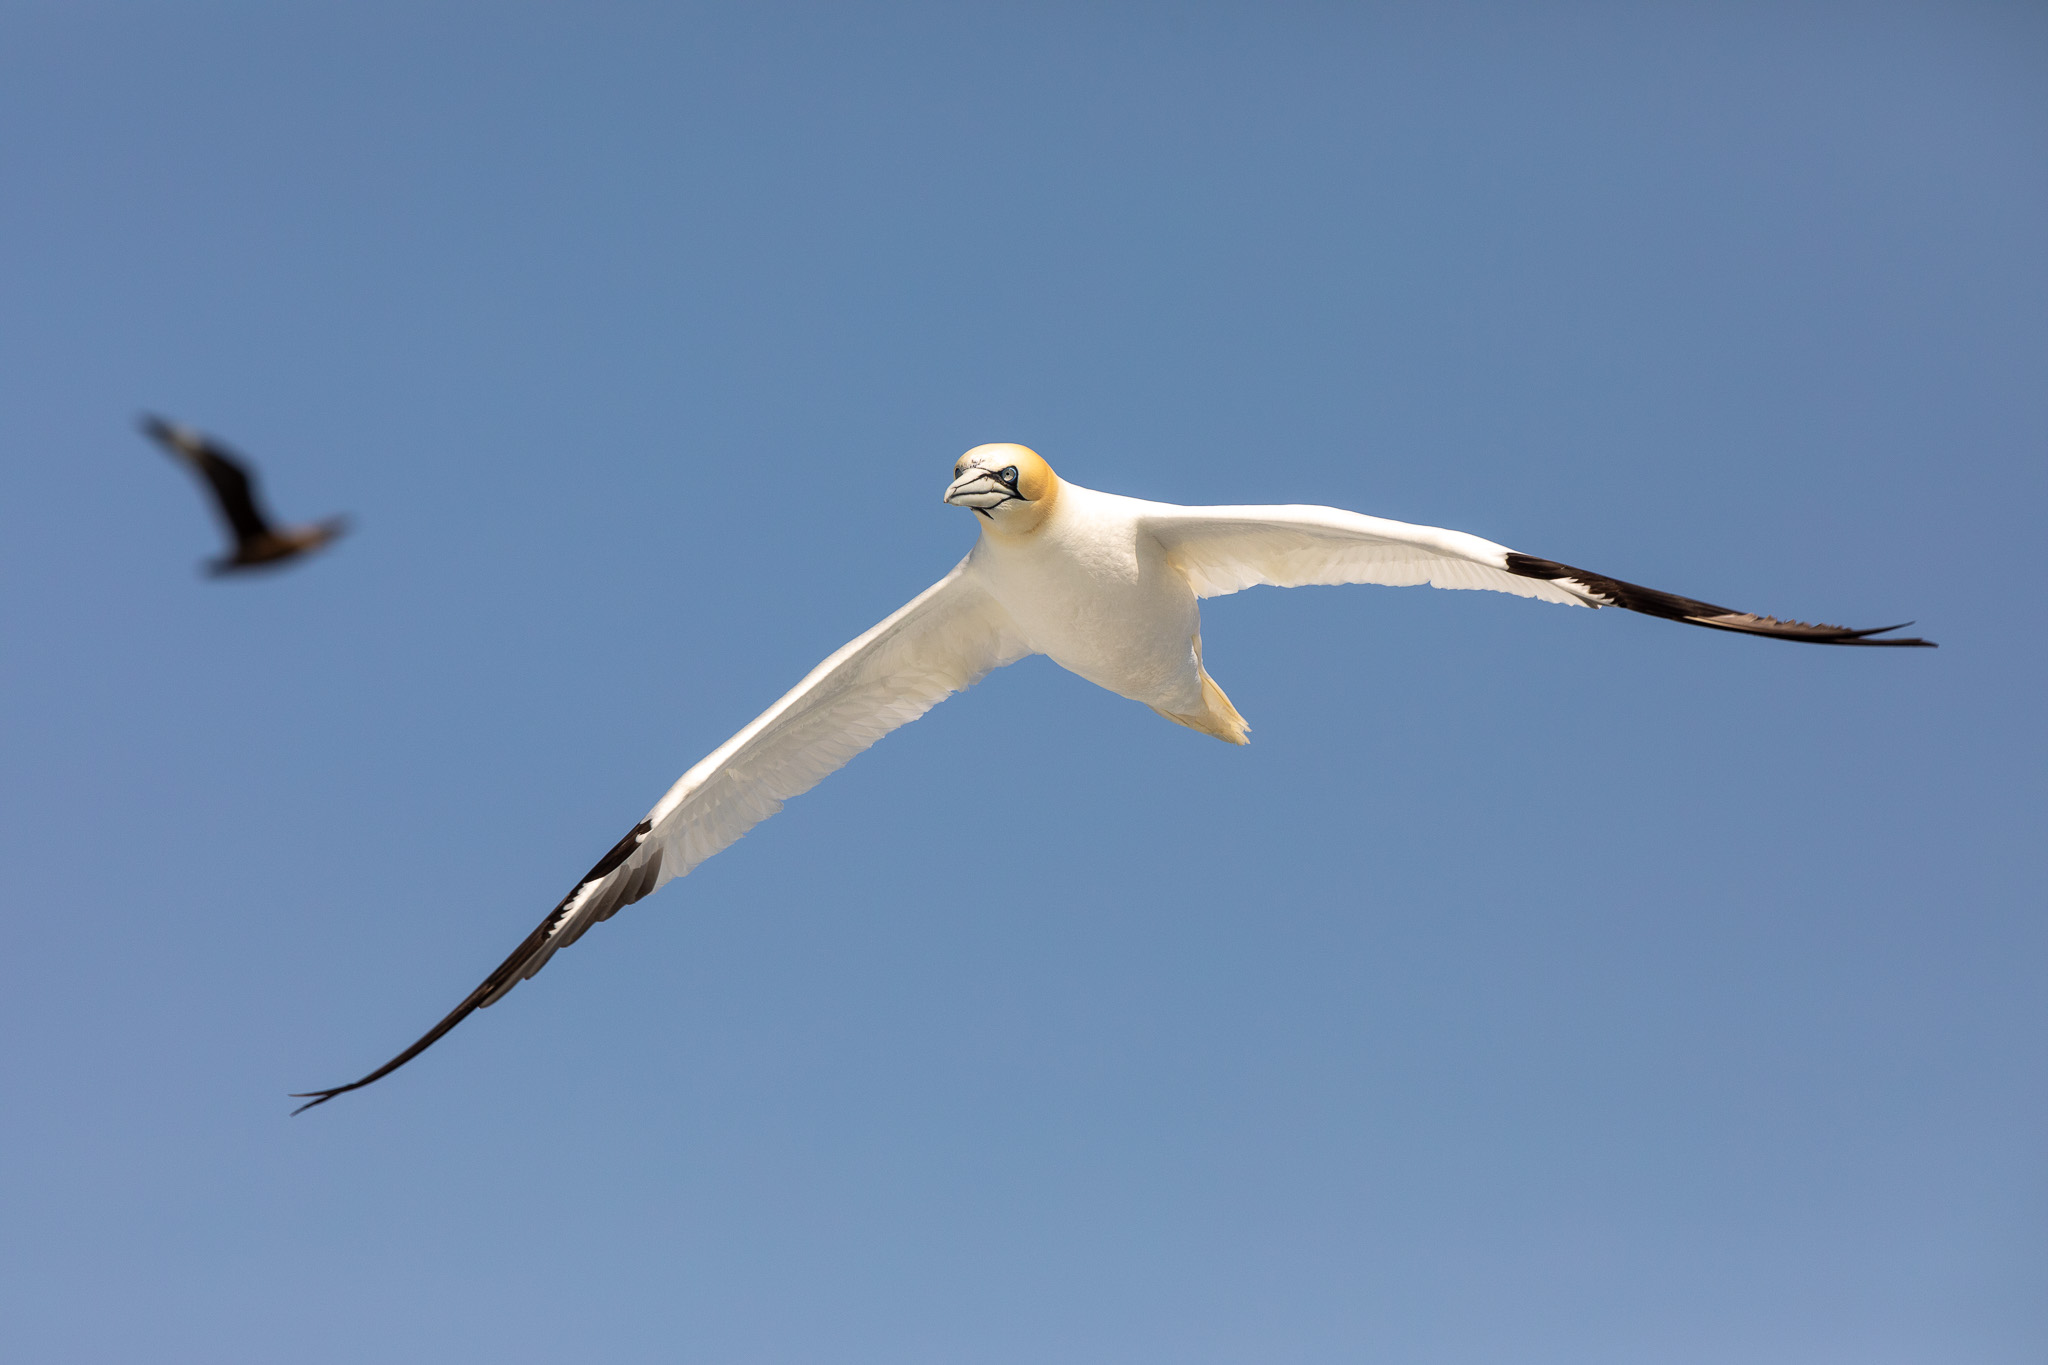 Vliegende jan-van-gent rond Noss national nature reserve. De Jan-van-gent is één van de zeevogels op de Shetlandeilanden